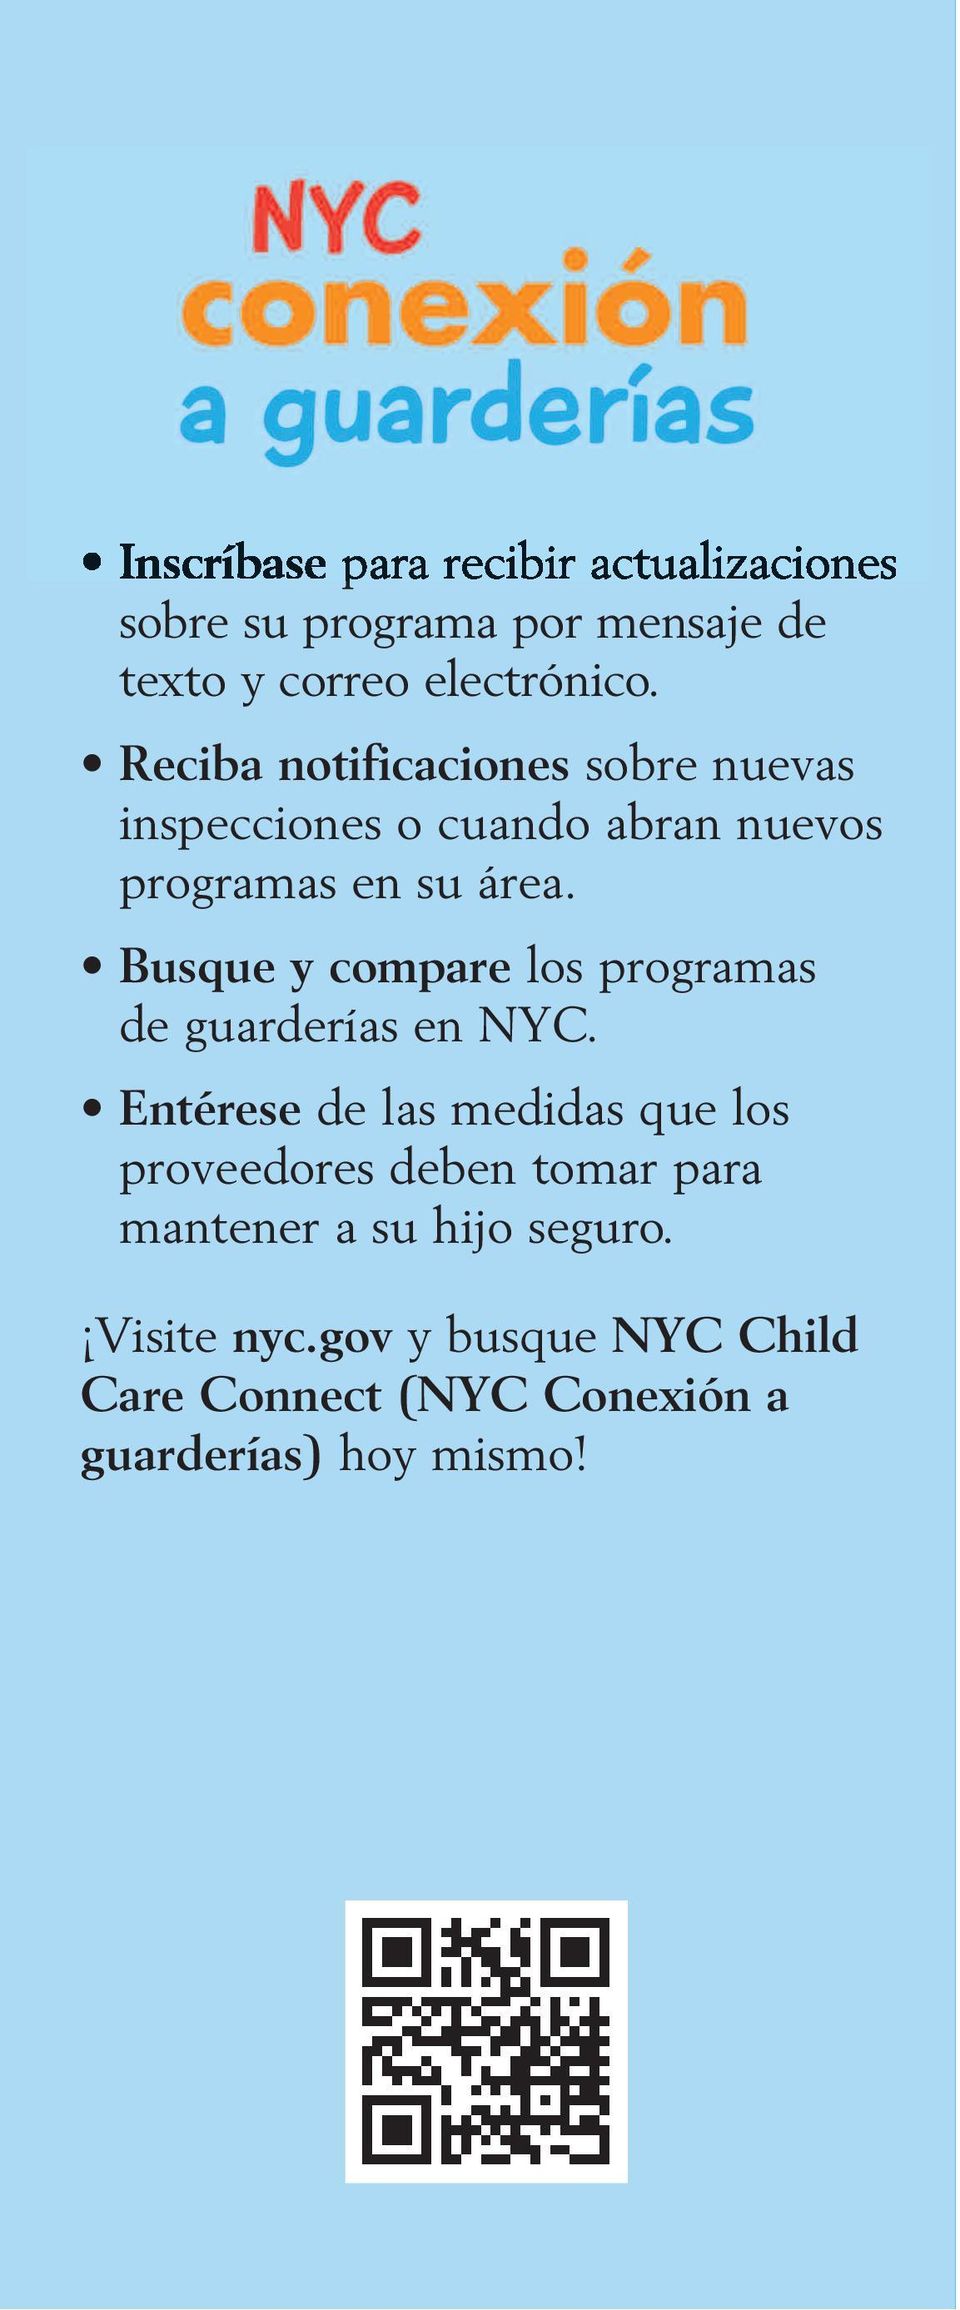 Busque y compare los programas de guarderías en NYC.